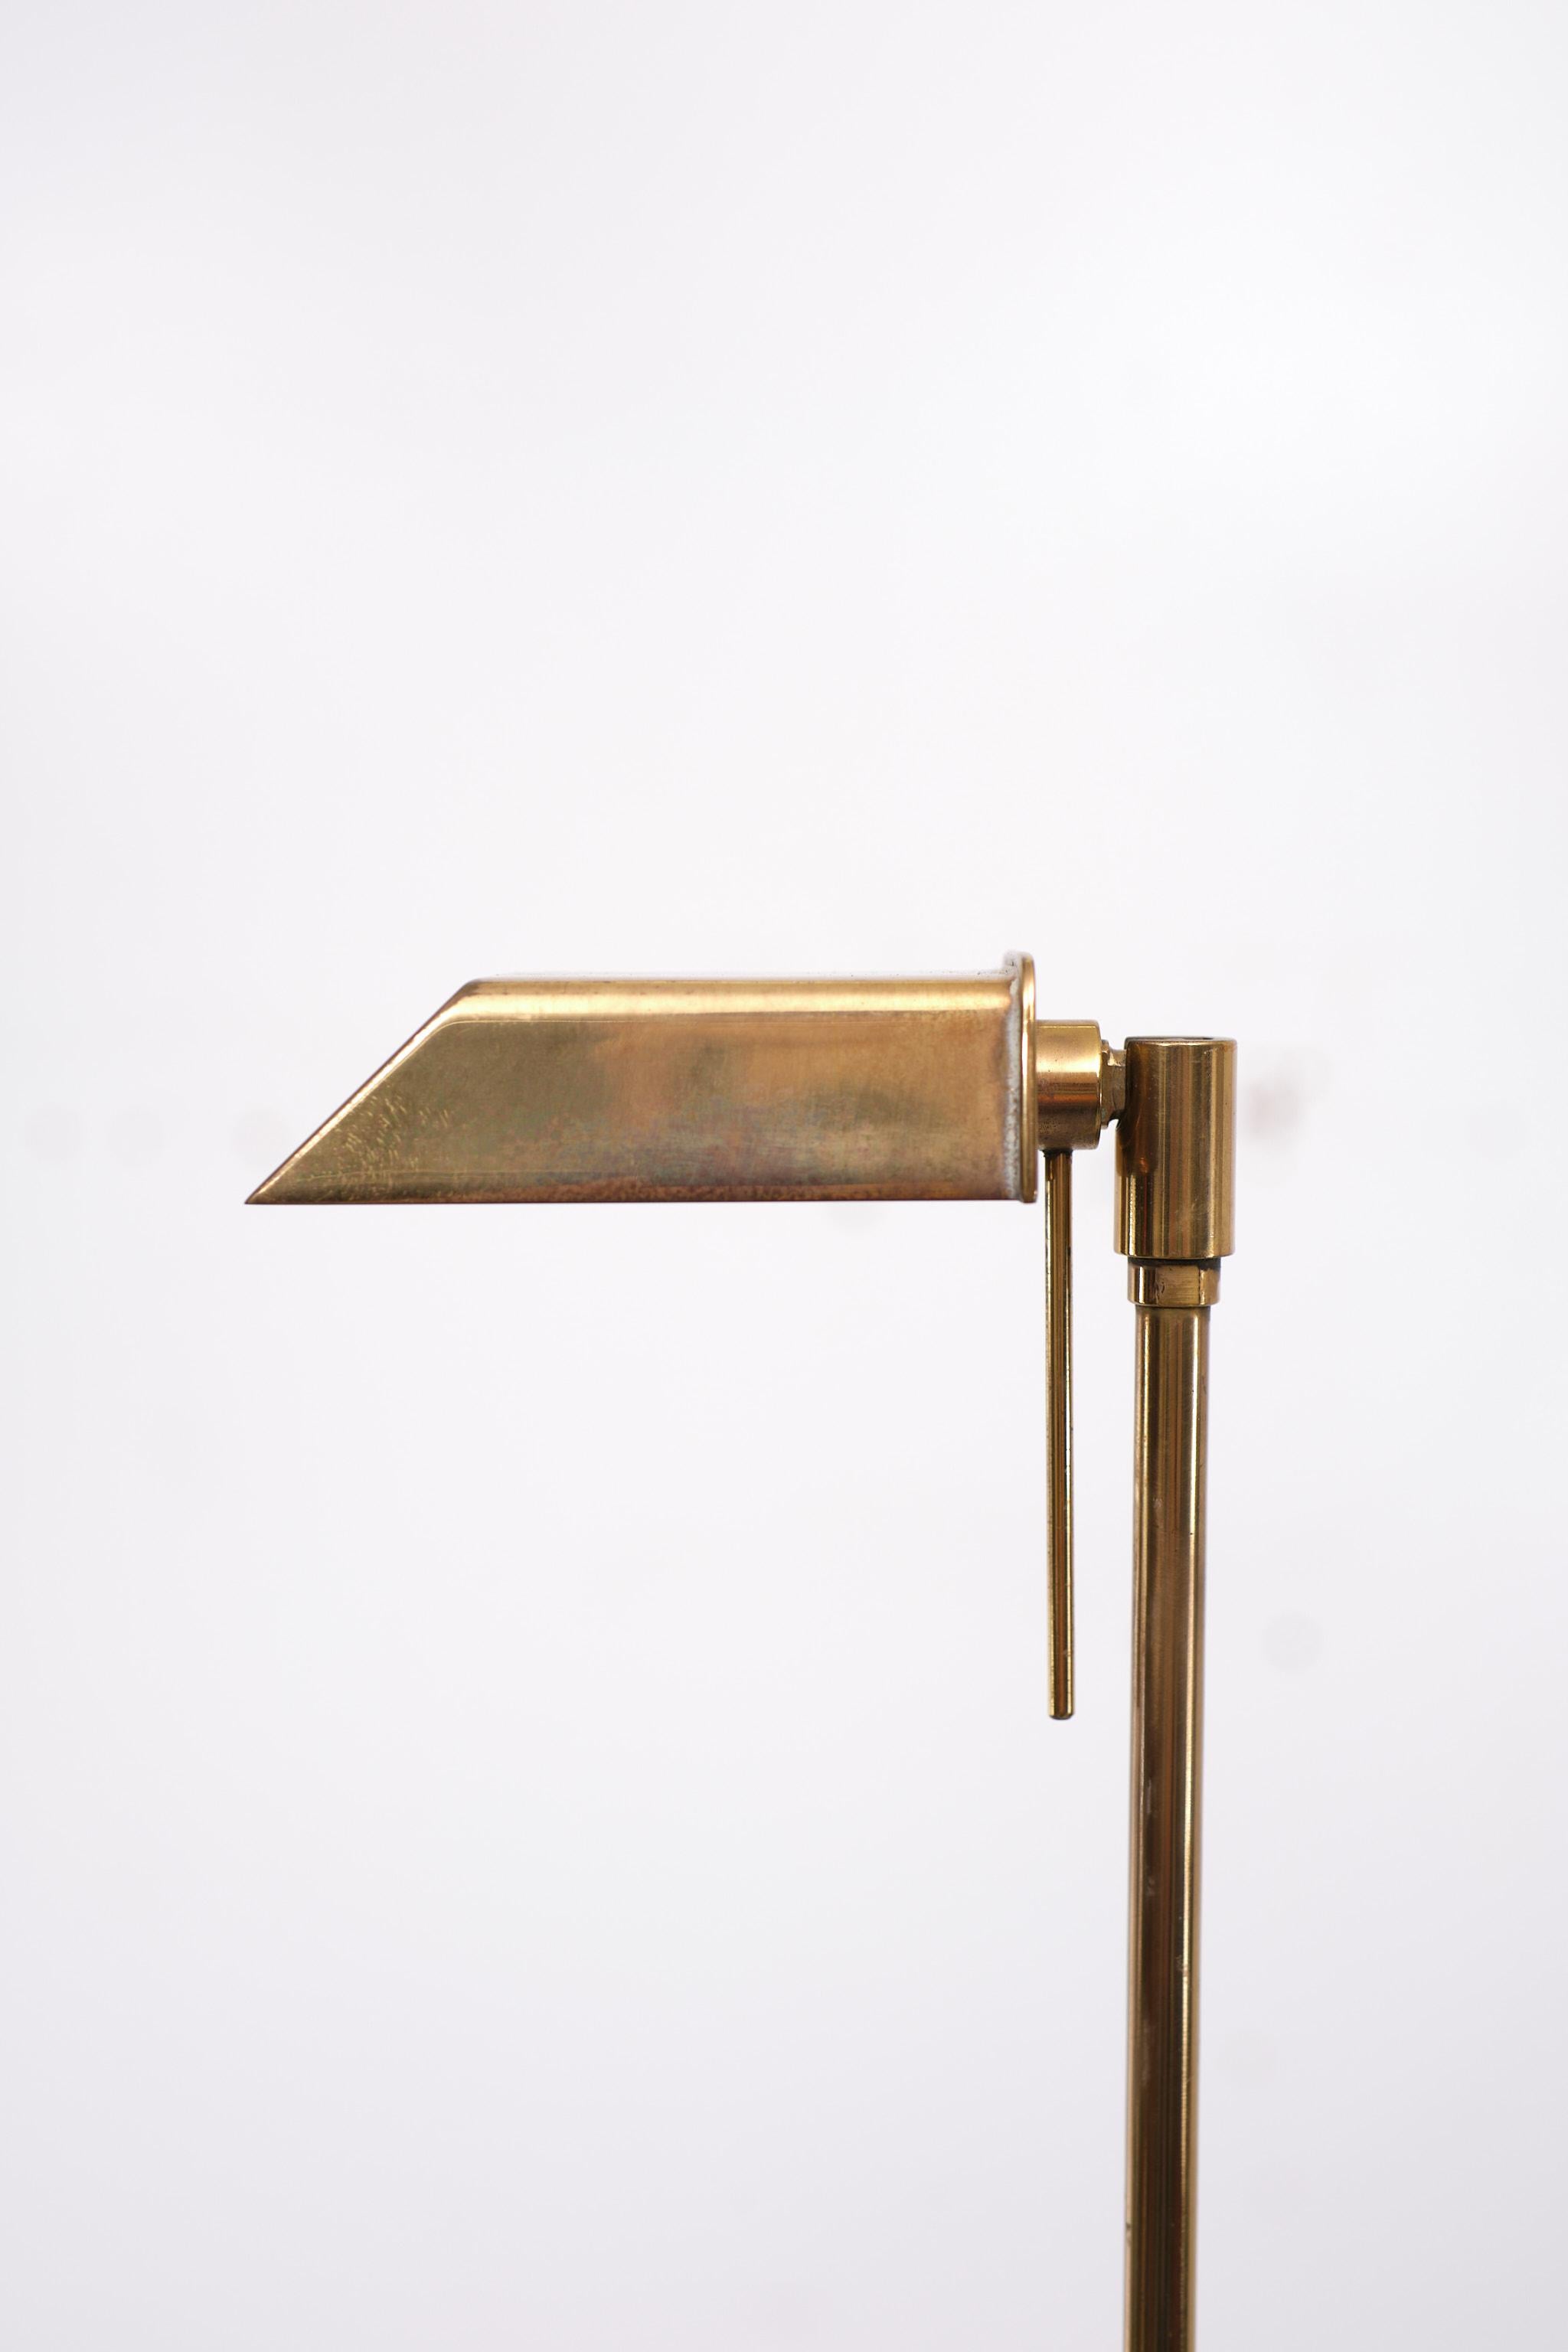 Scandinavian Brass Swing Arm Floor Lamps 1970s